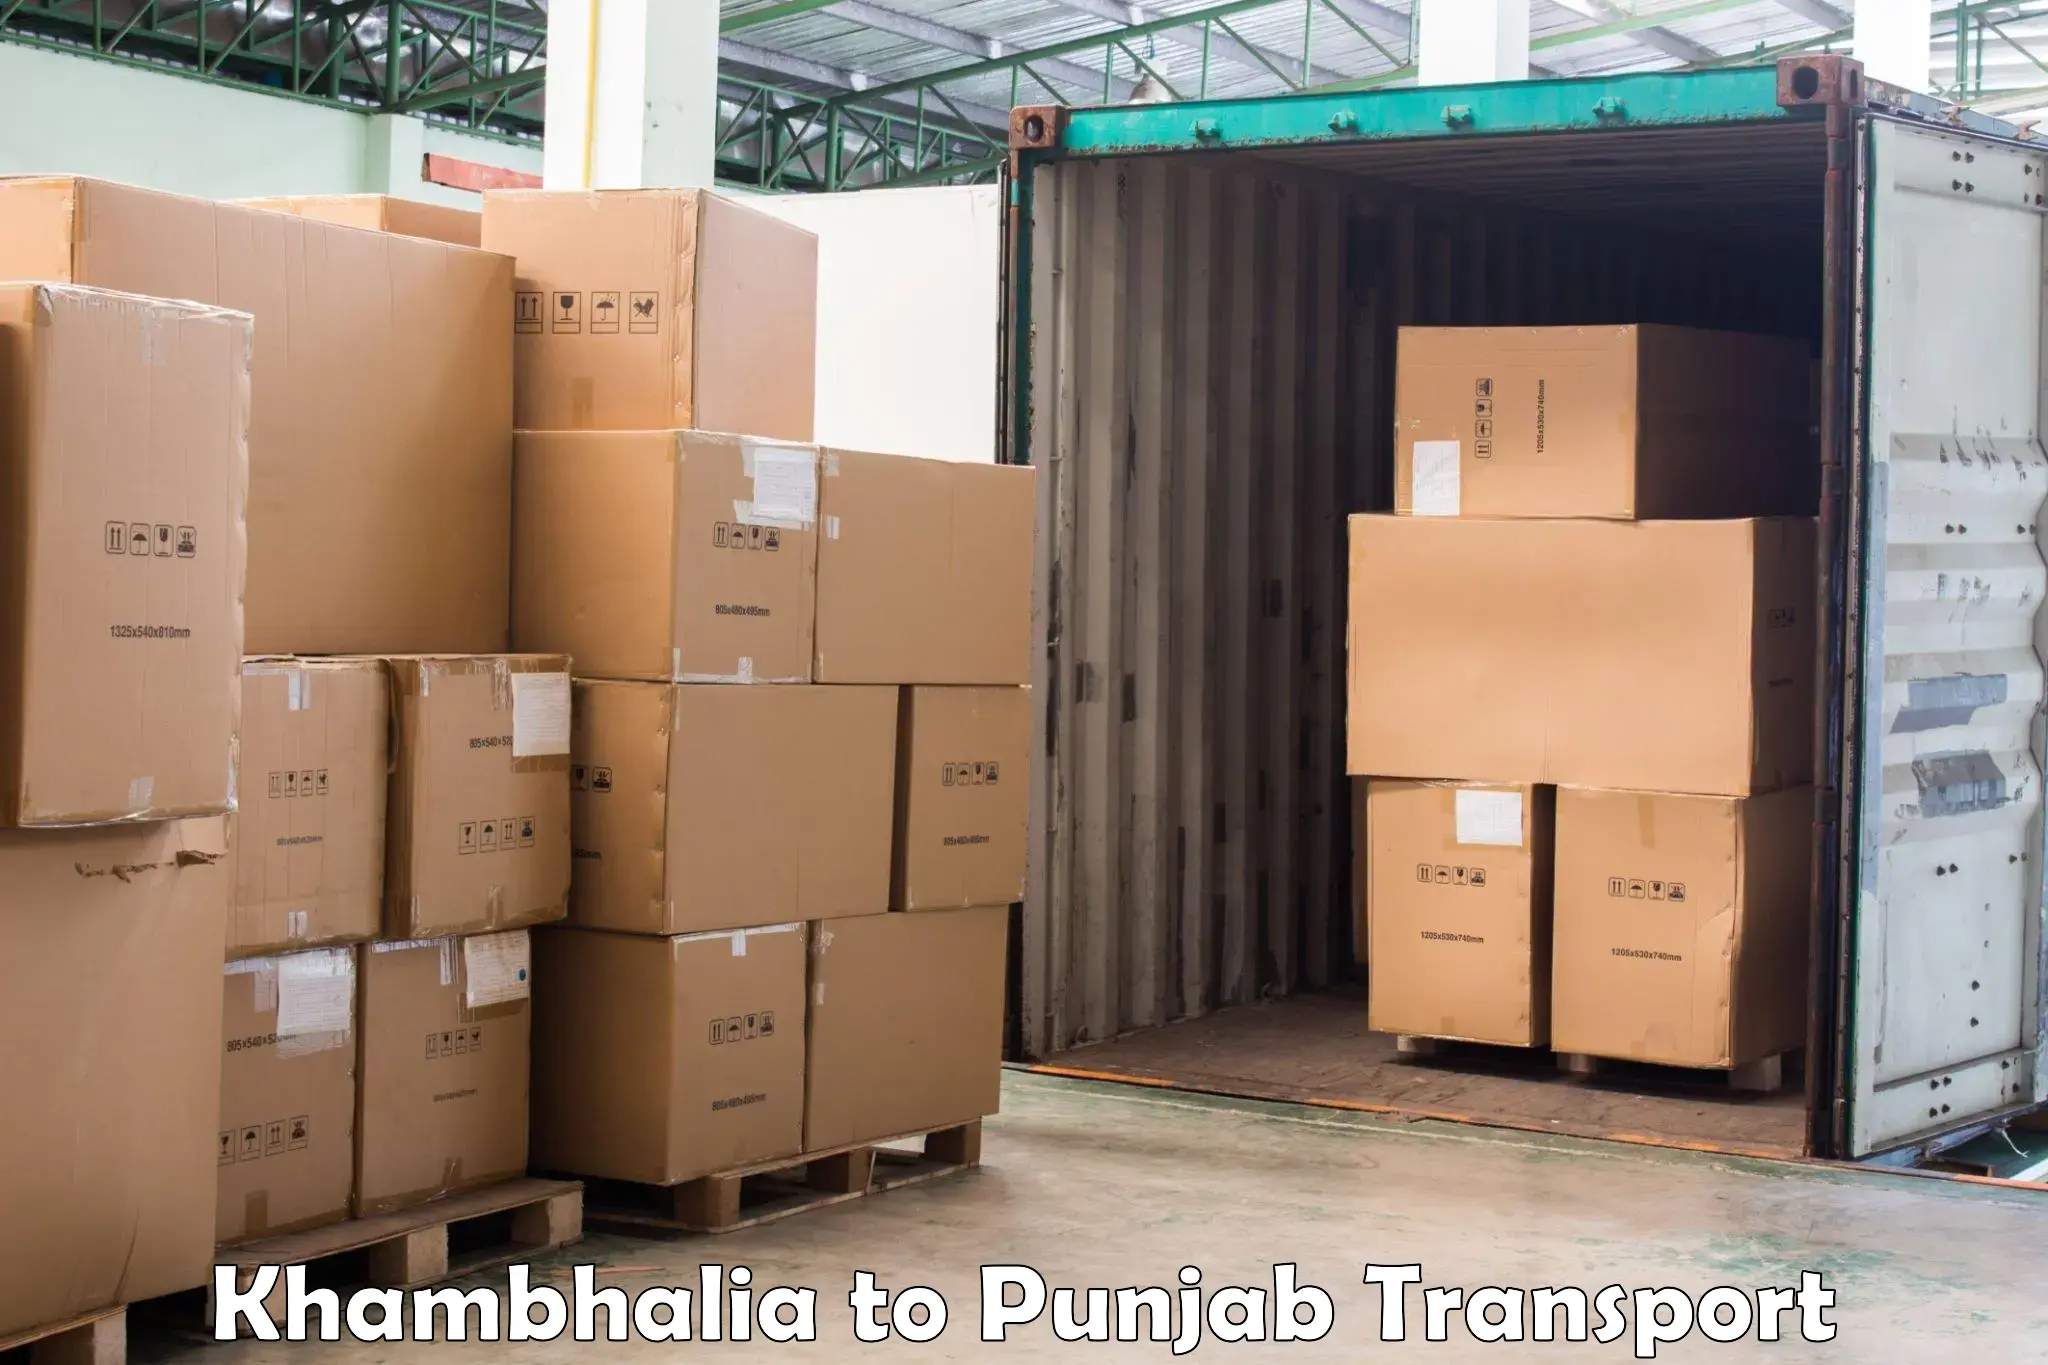 Commercial transport service Khambhalia to Punjab